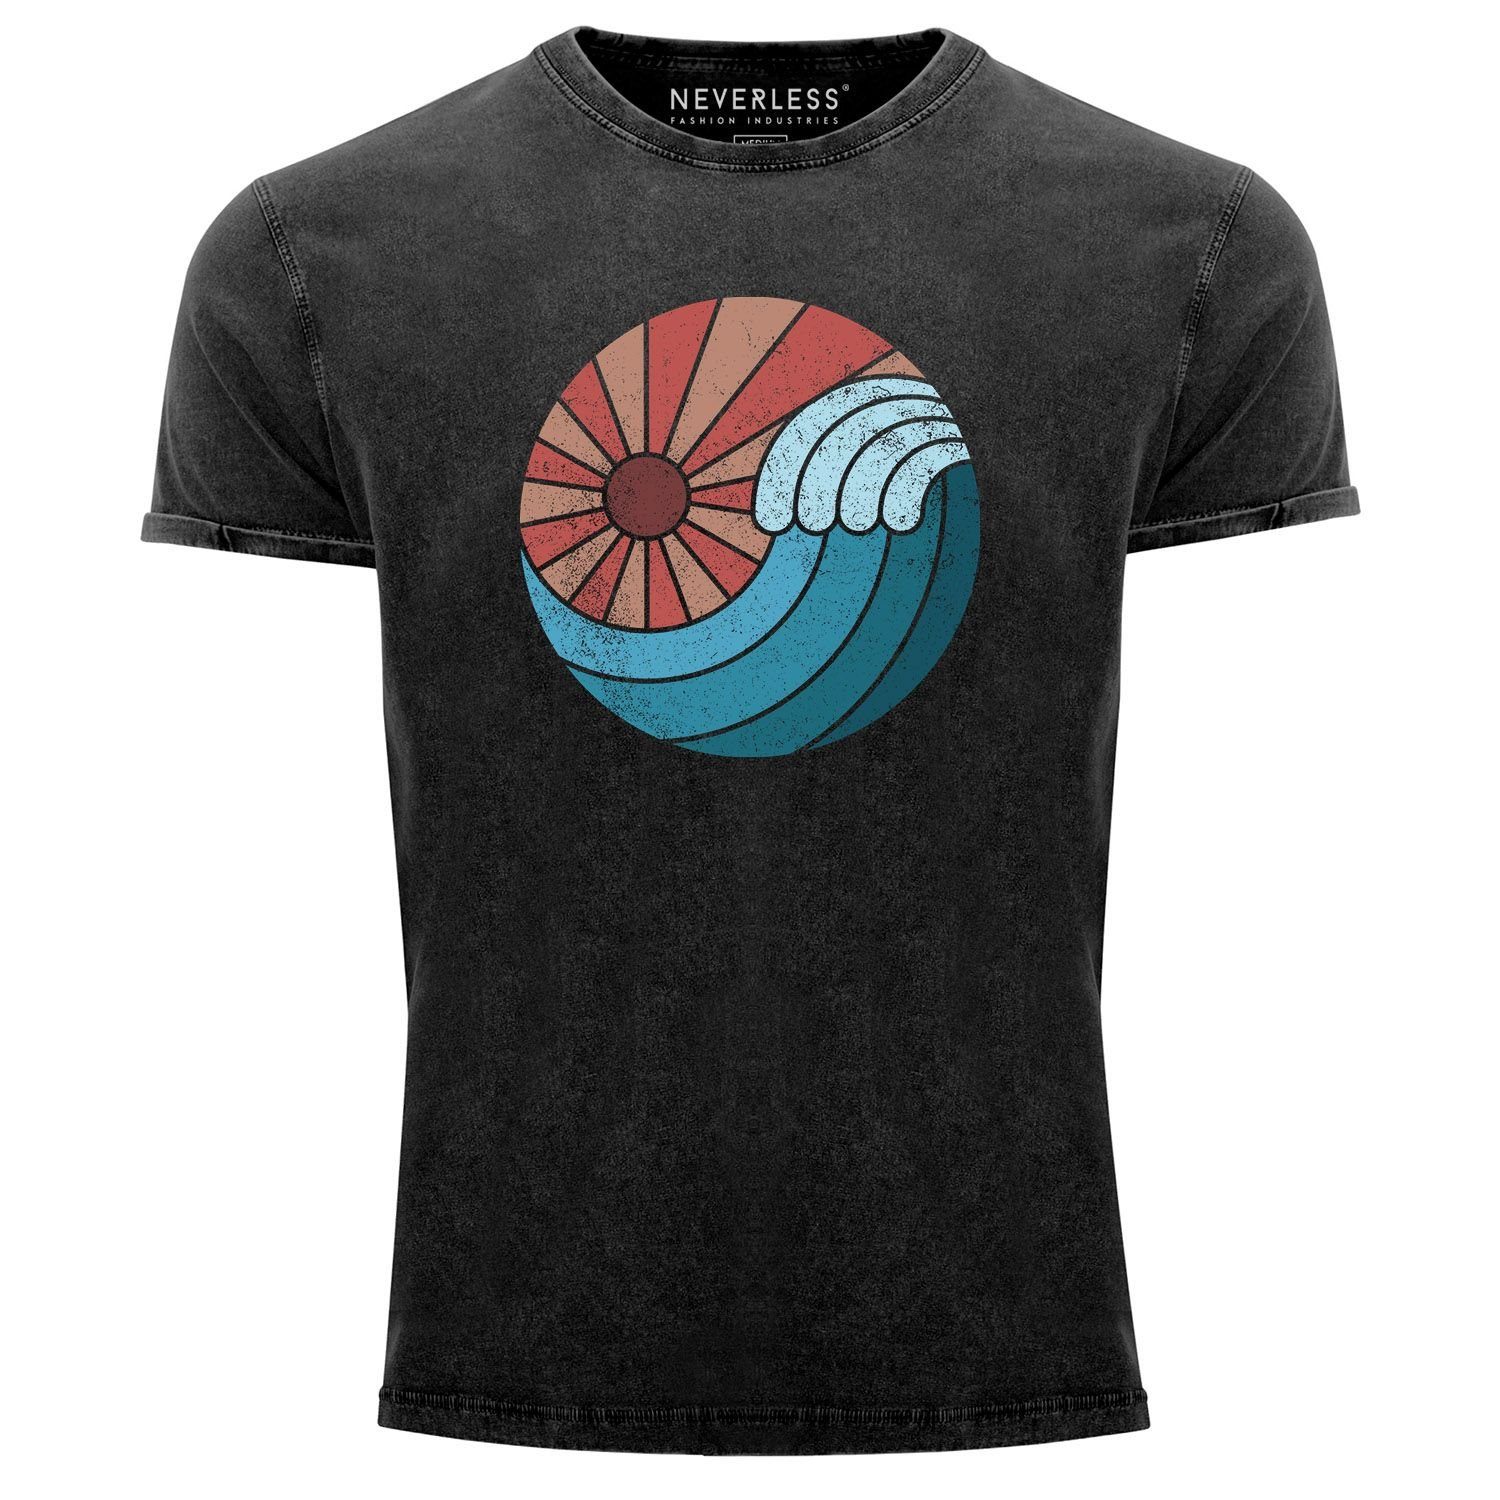 Used Sonne Herren T-Shirt Welle Neverless® Look Sommer Vintage Wave Printshirt Aufdruck Shirt Neverless Print-Shirt mit Retro Print